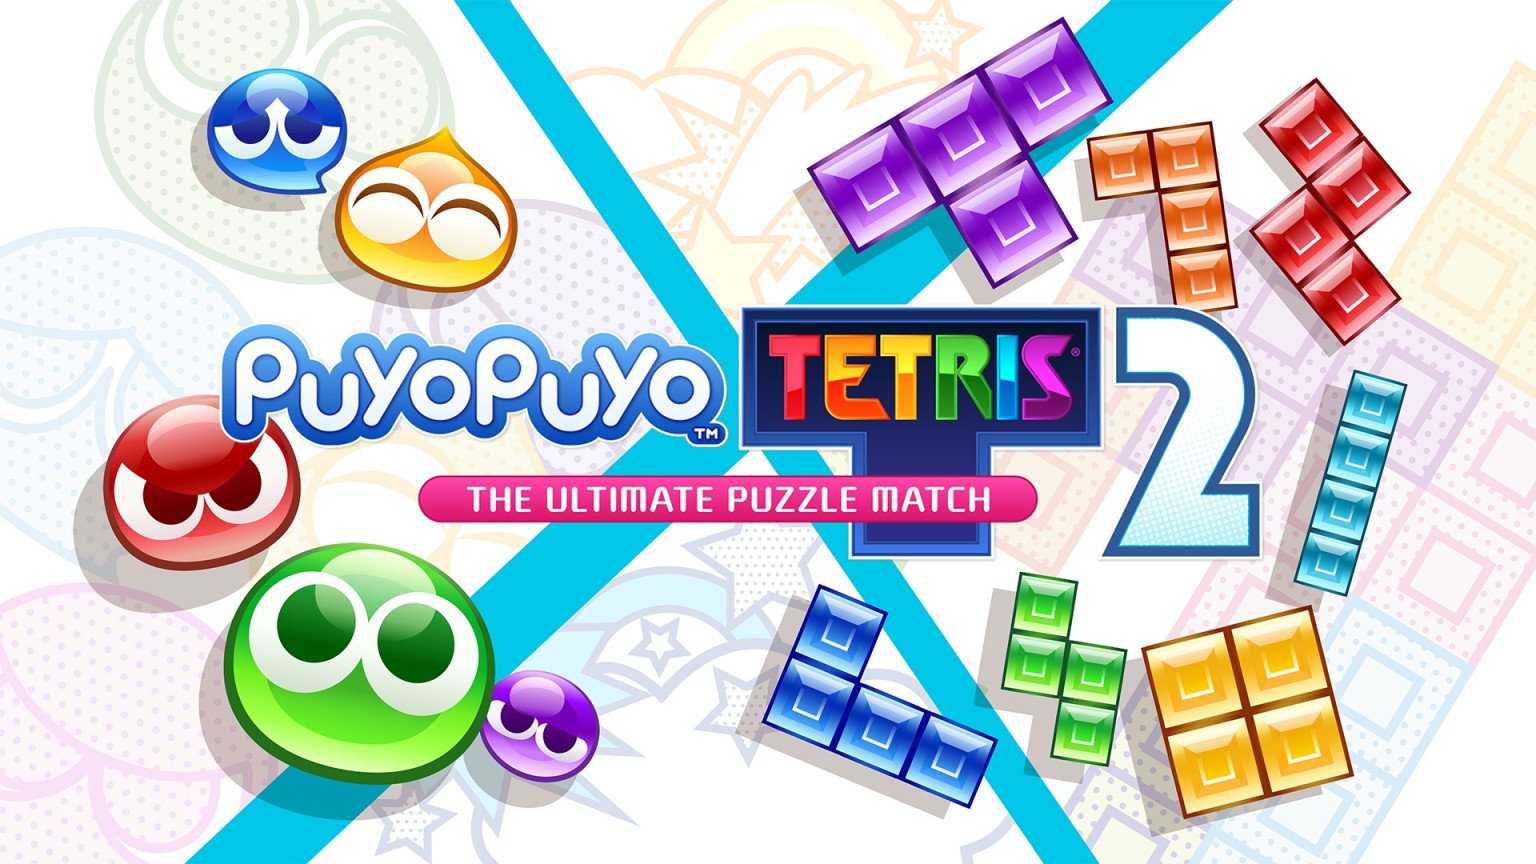 puyo-puyo-tetris-2-pre-order-image-01.jpg